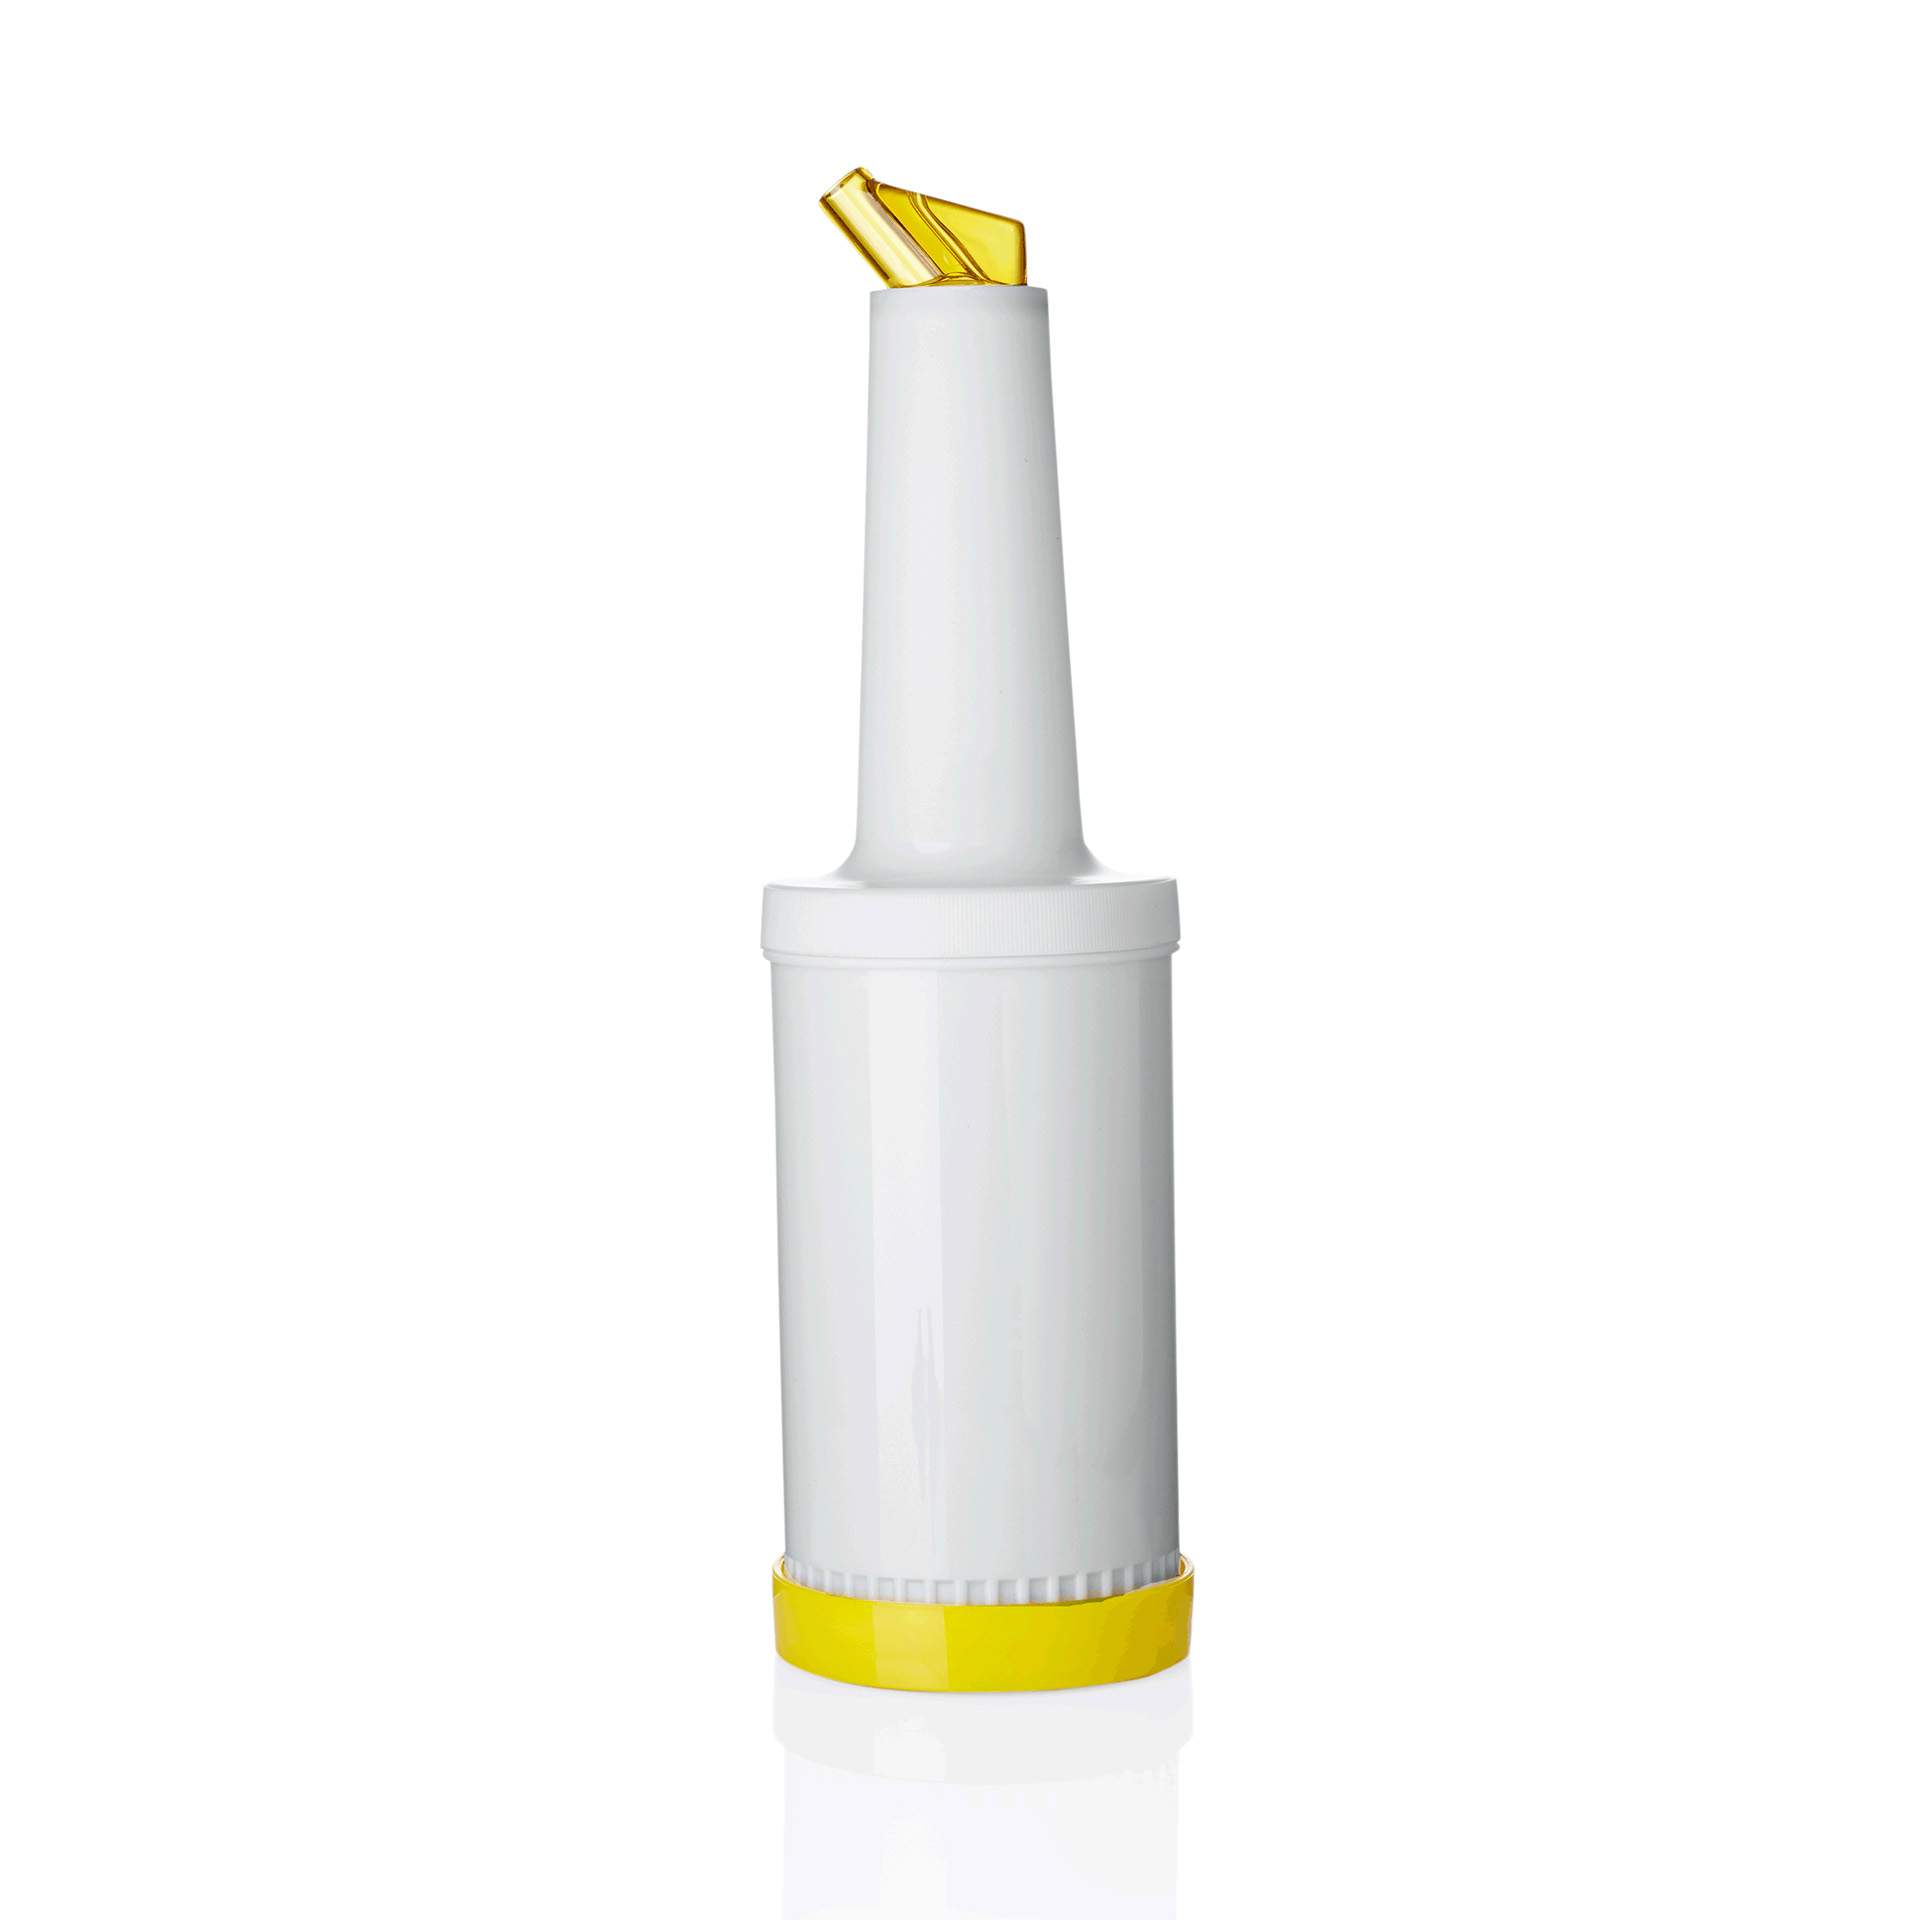 Dosierflasche - 4-teilig - gelb - Inhalt 1,0 l - Polypropylen - 9994006-A